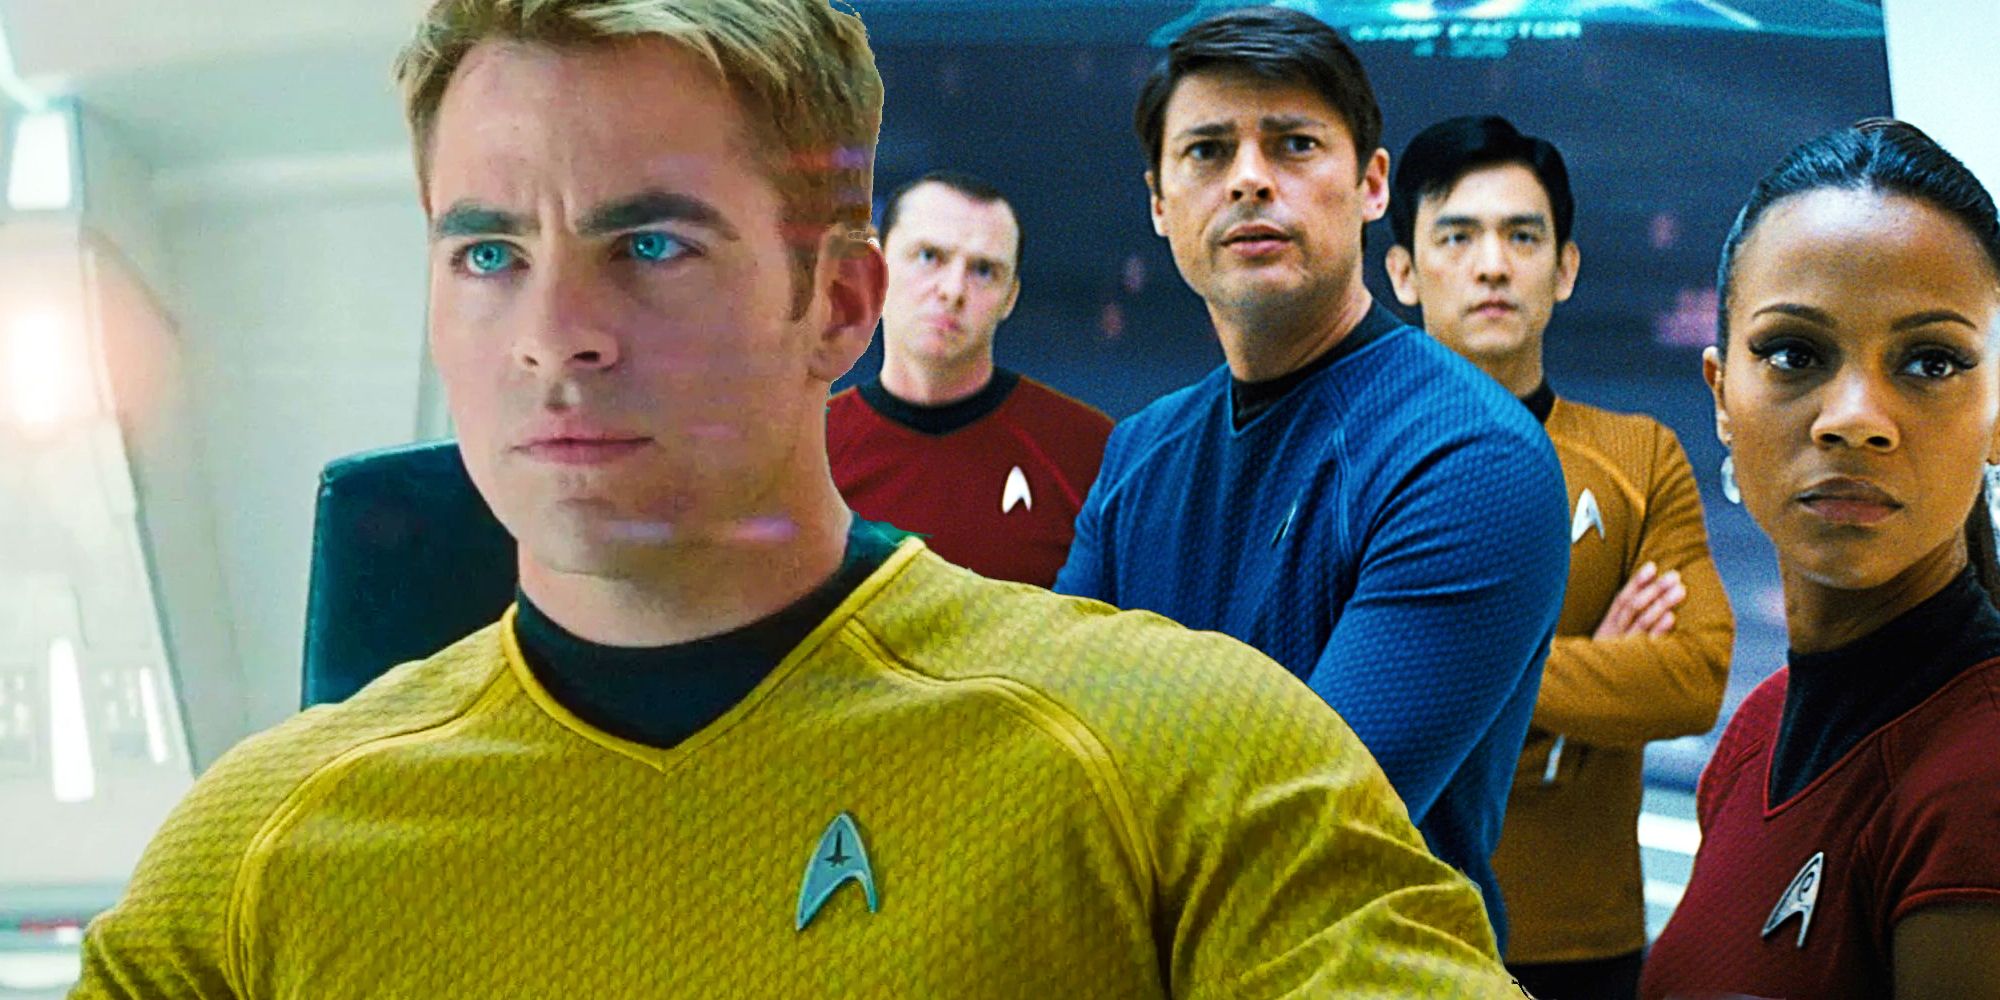 El reinicio de Star Trek de JJ Abrams “Empezar de nuevo fue brillante”, dice el popular escritor de TNG y DS9